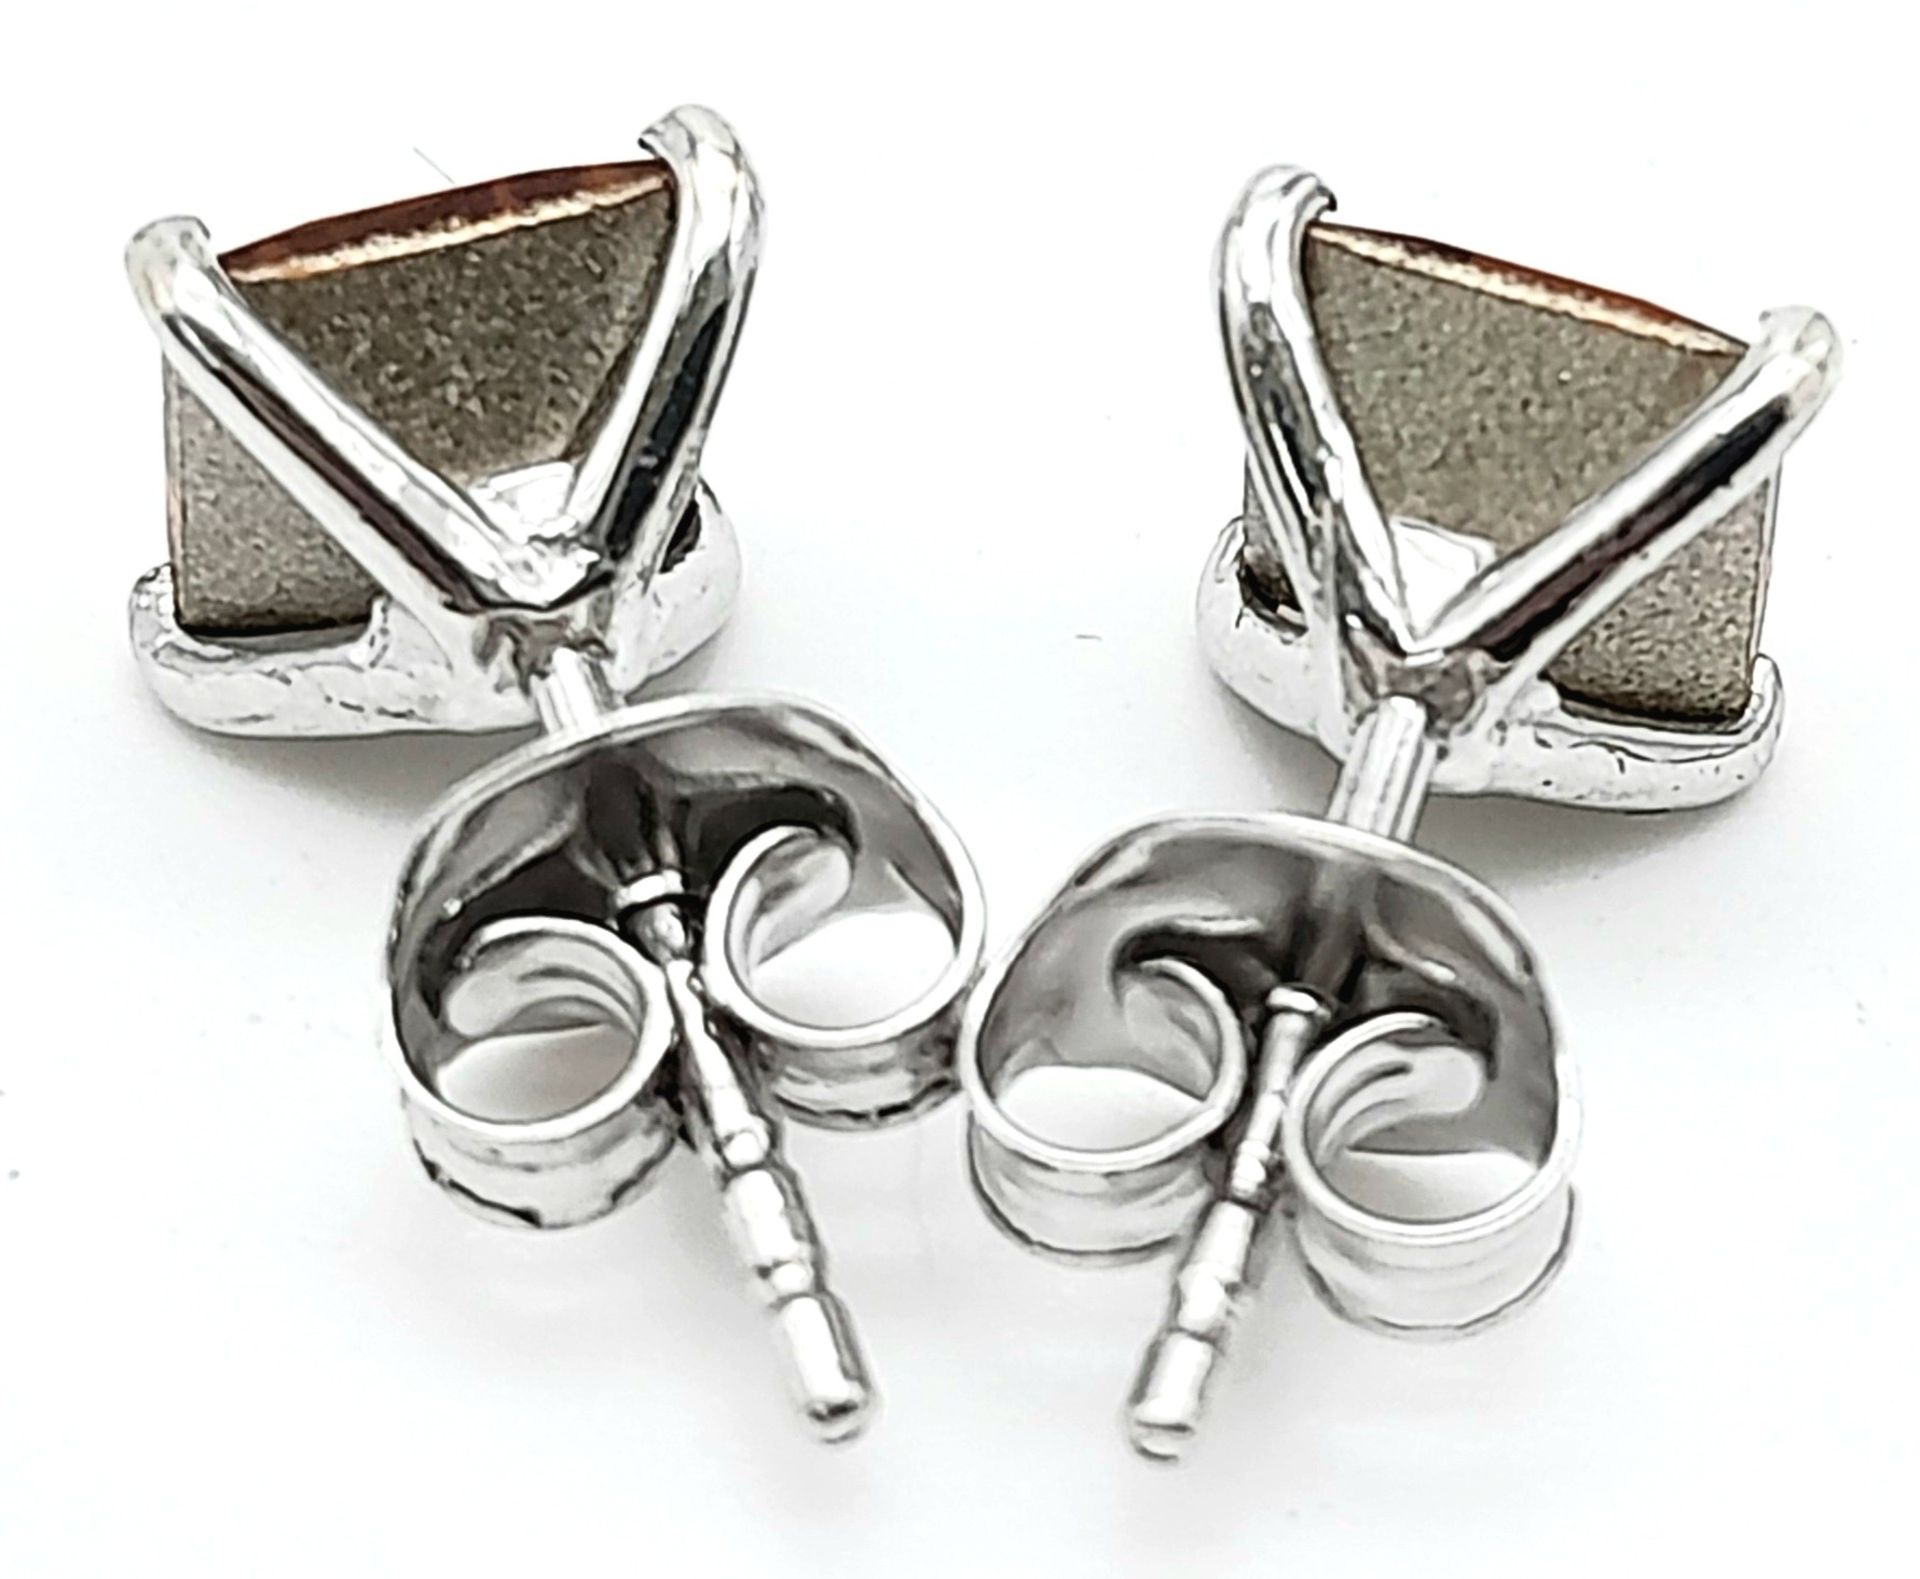 A Pair of Citrine Stud Earrings - Set in 925 Silver. - Bild 2 aus 4